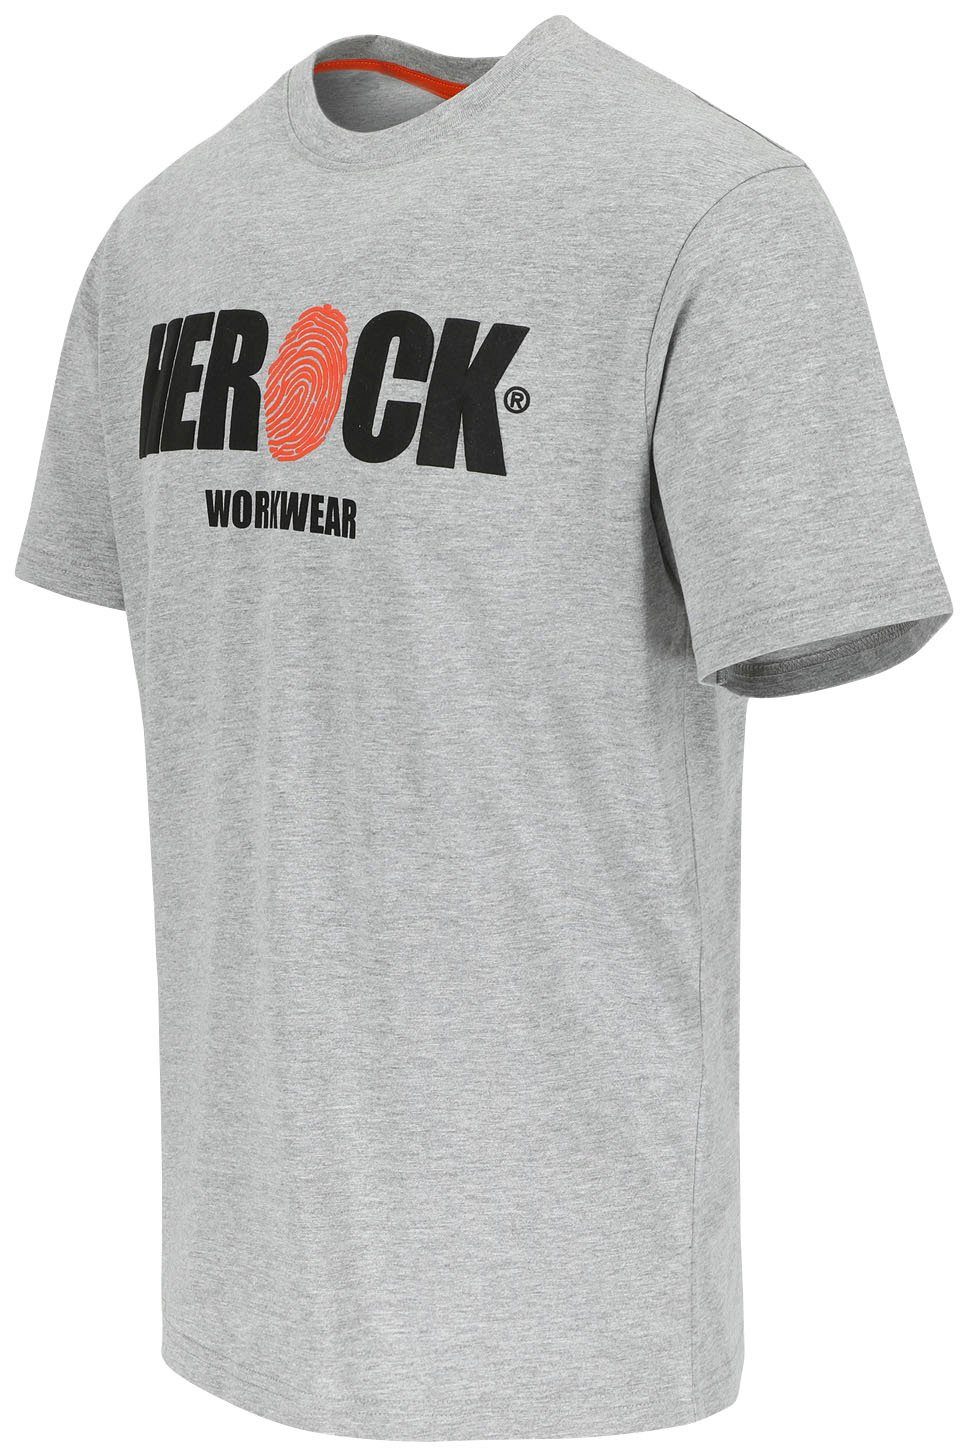 Herock Tragegefühl angenehmes mit Rundhals, Baumwolle, Herock®-Aufdruck, T-Shirt grau ENI